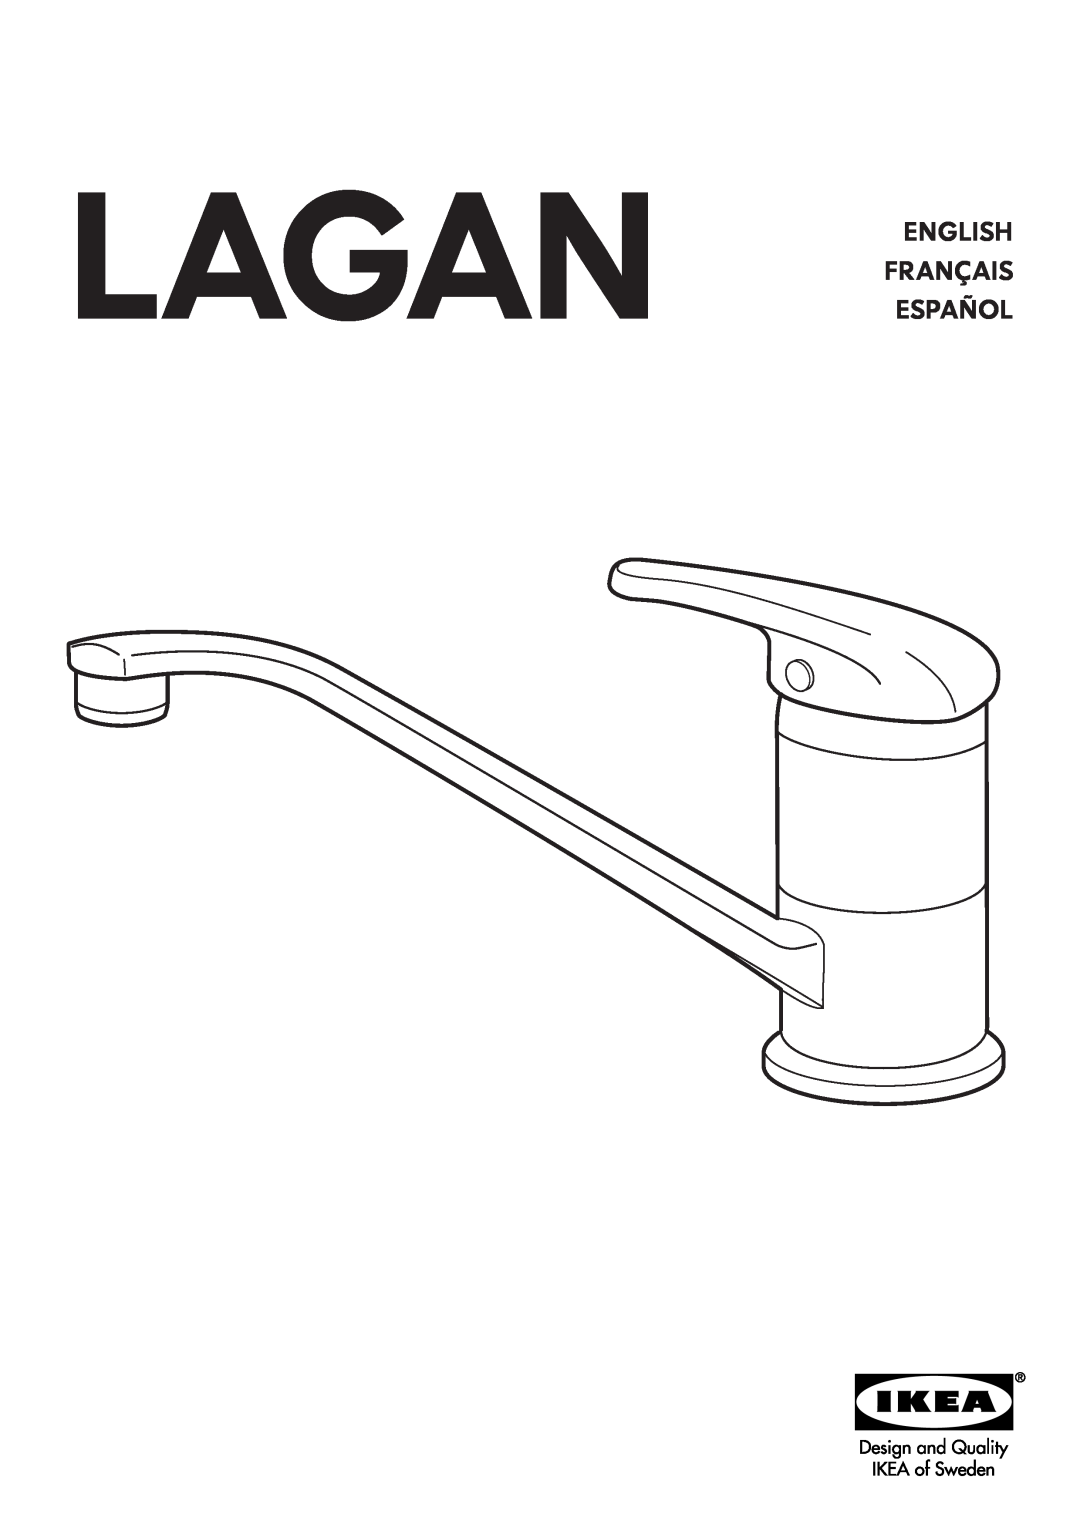 IKEA AA-290704-1 manual Lagan English Français Español 